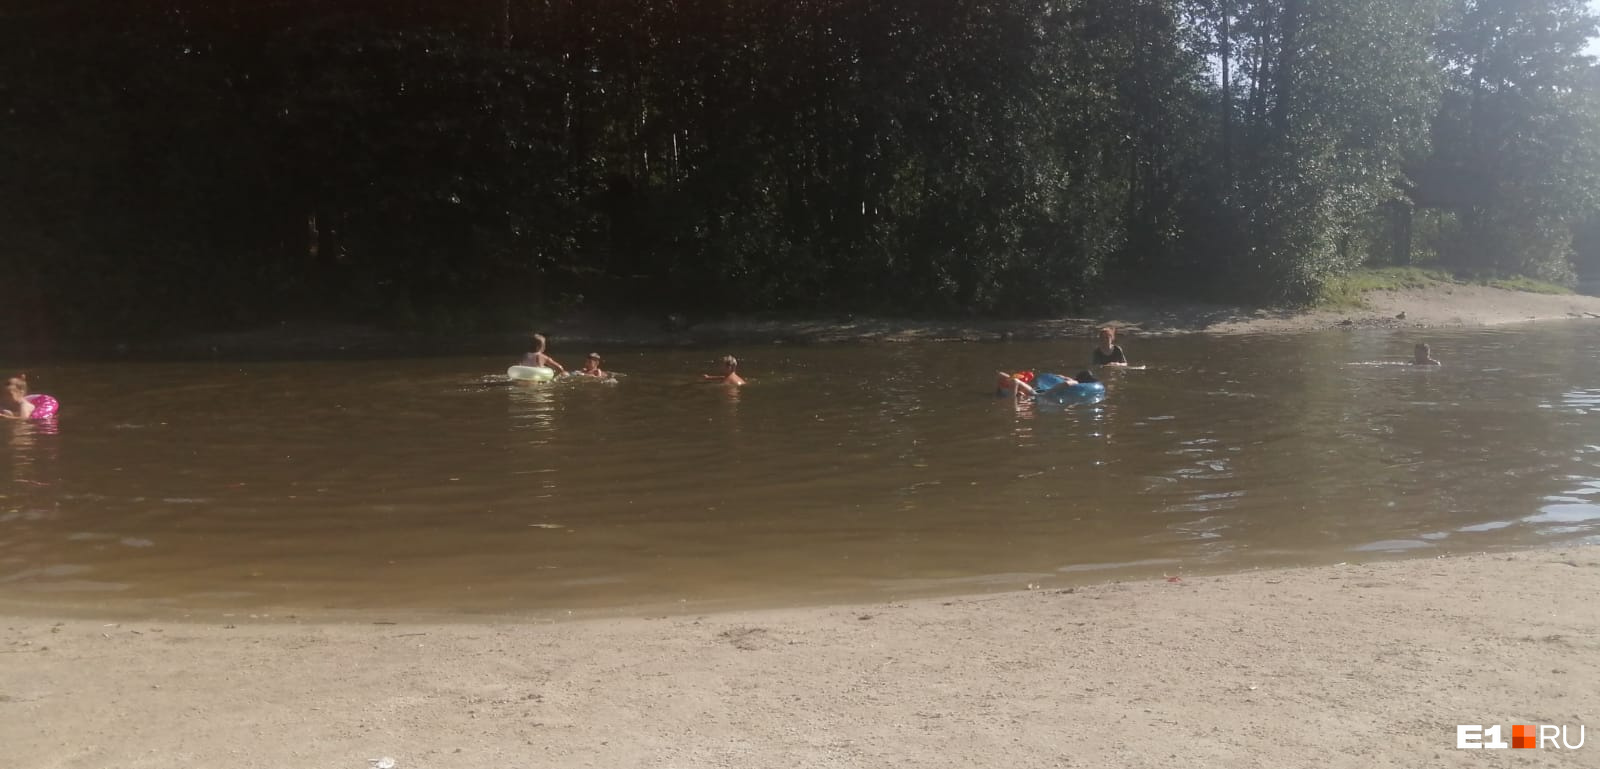 Дети продолжают купаться в озере